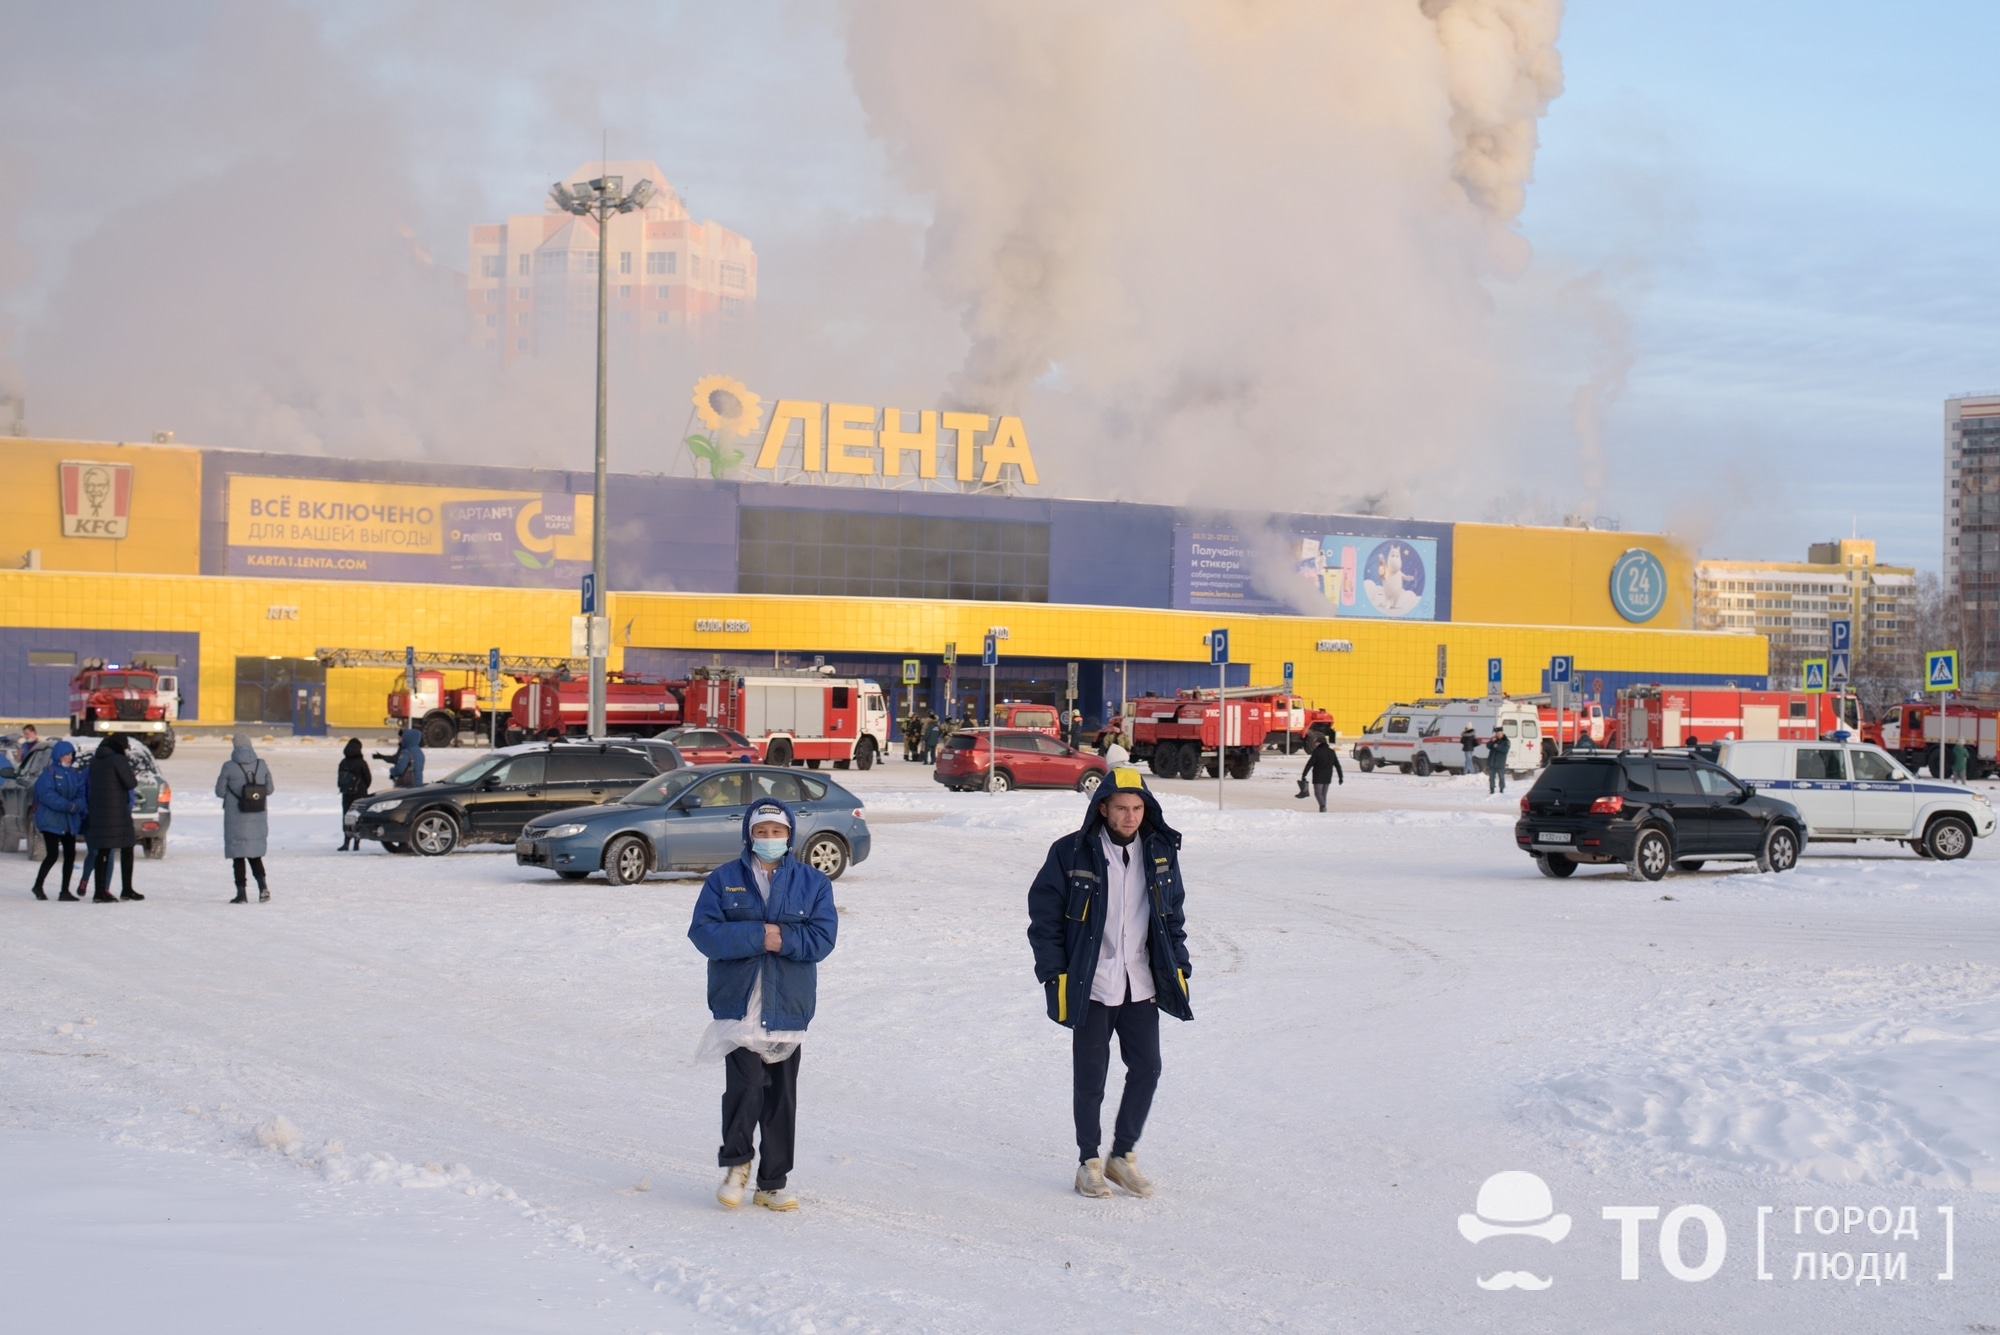 Происшествия, Томские новости, Лента пожар горит огонь сводка происшествий жесть Томска Пожар в томском гипермаркете «Лента»